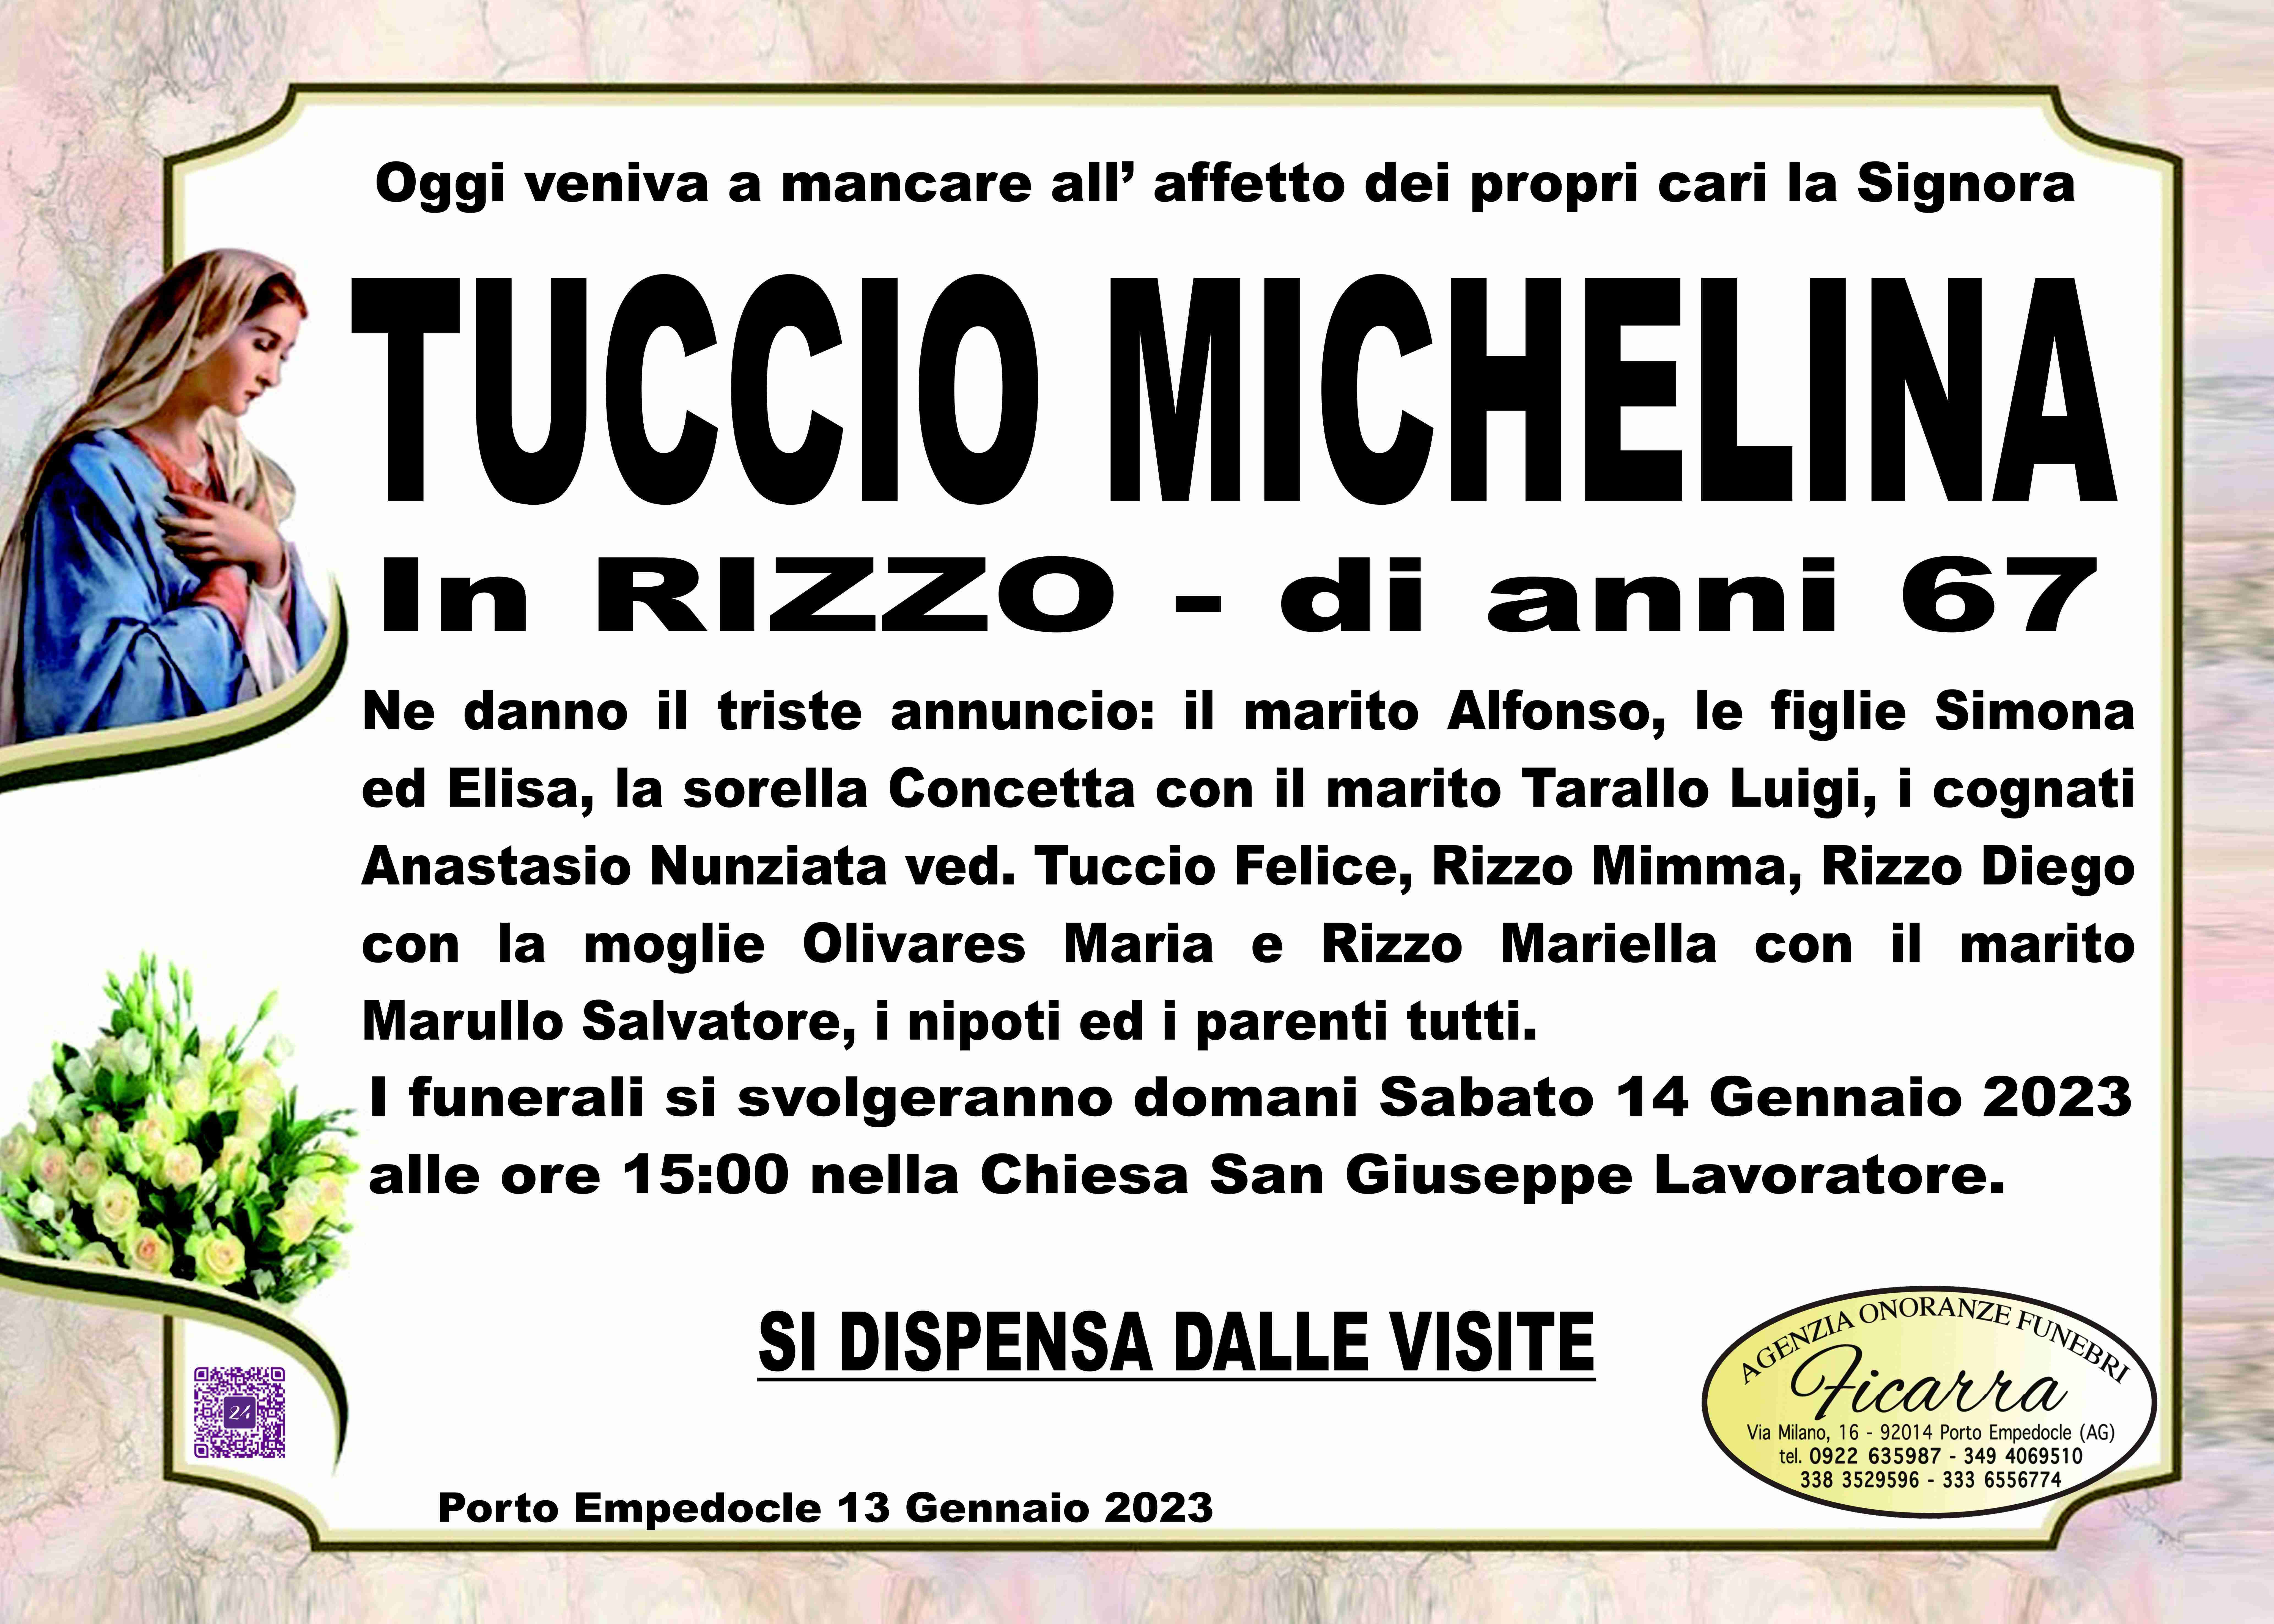 Michelina Tuccio